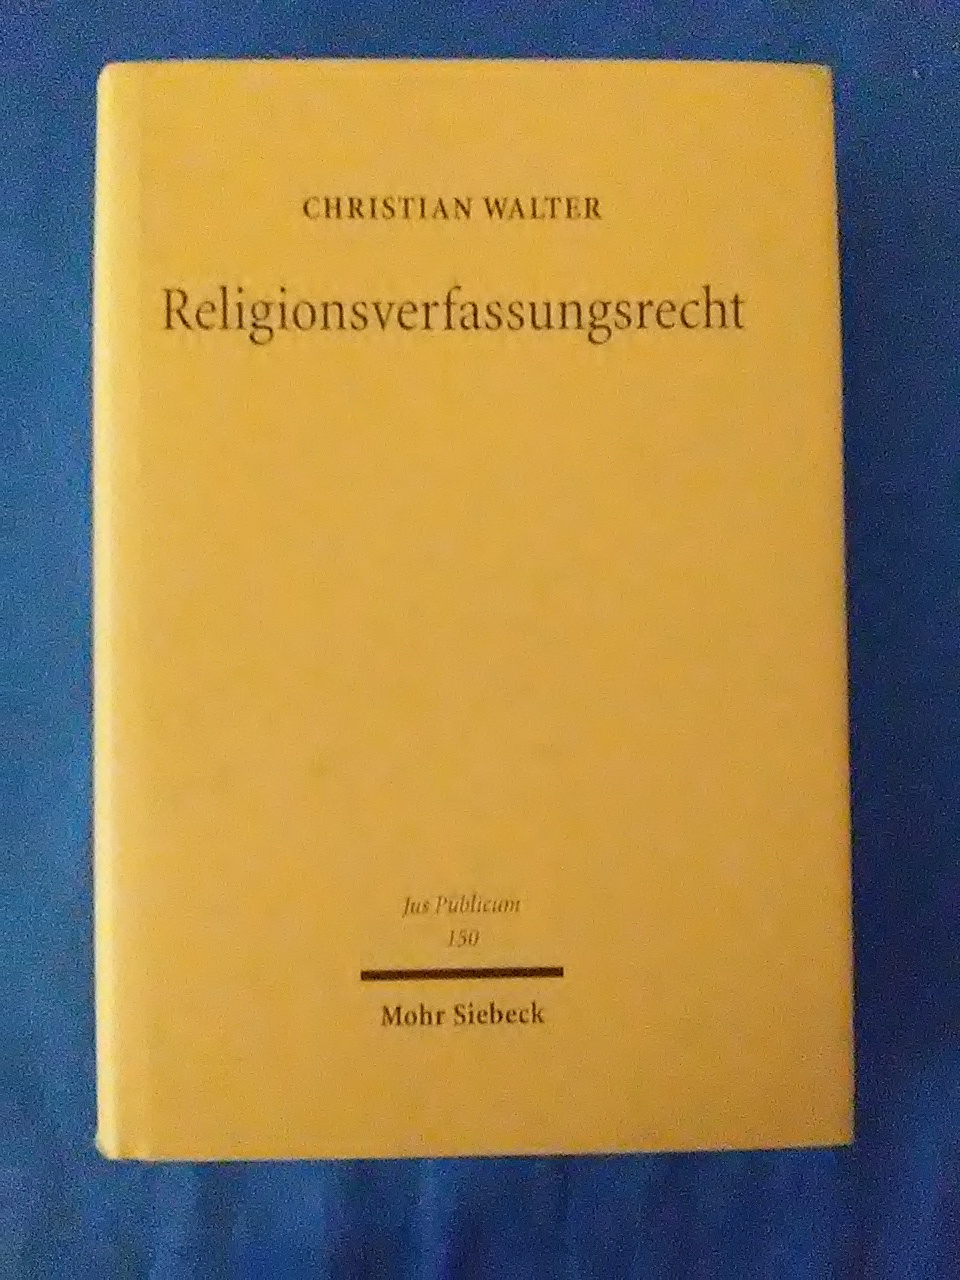 Religionsverfassungsrecht in vergleichender und internationaler Perspektive. Jus publicum ; Bd. 150. - Walter, Christian.